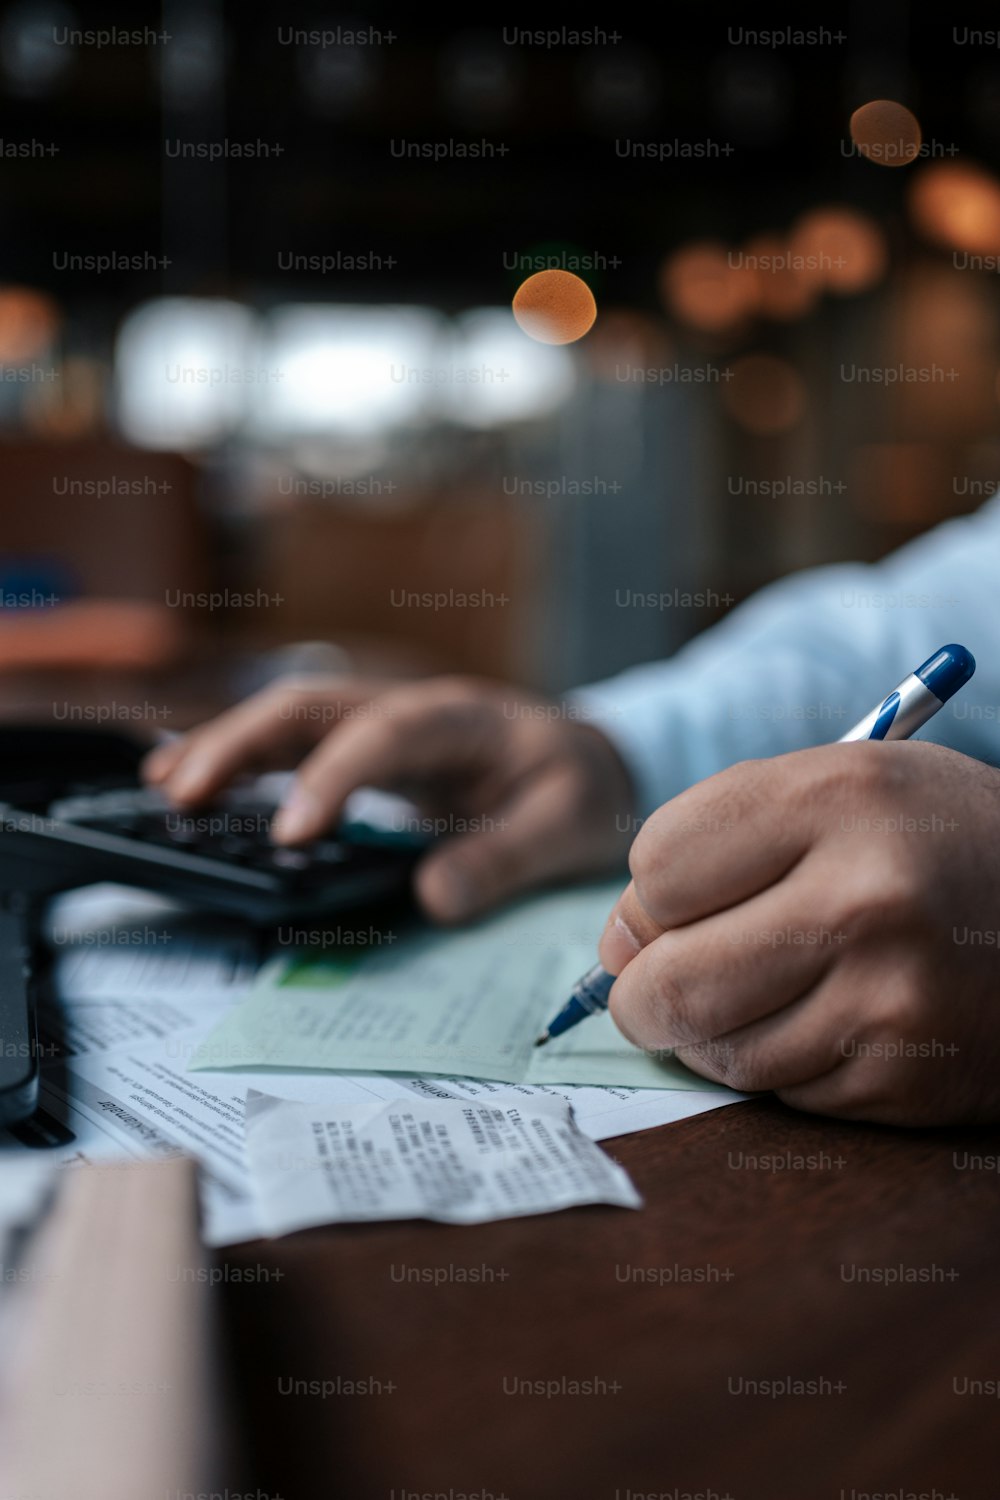 uma pessoa sentada em uma mesa com uma calculadora e caneta